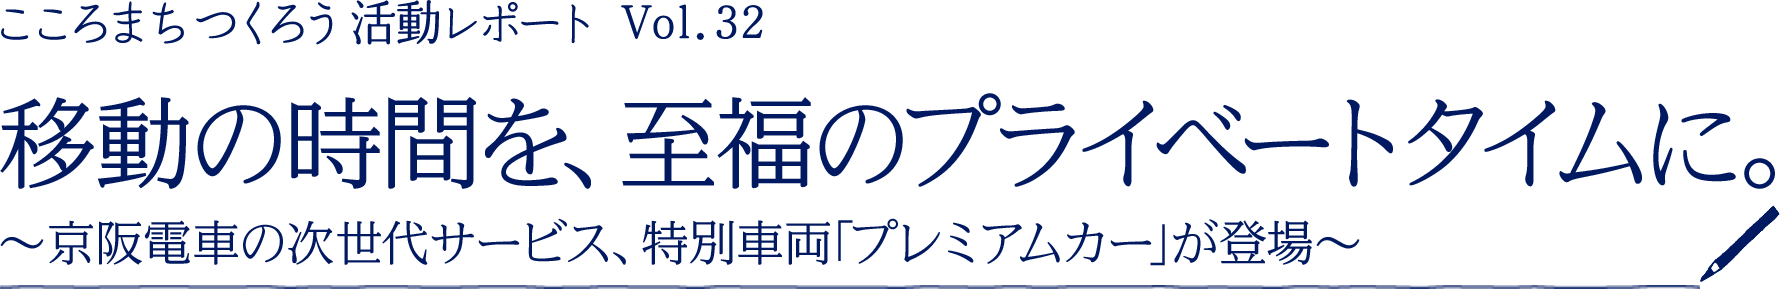 ［こころまちつくろう 活動レポート Vol.32］移動の時間を、至福のプライベートタイムに。～京阪電車の次世代サービス、特別車両「プレミアムカー」が登場～